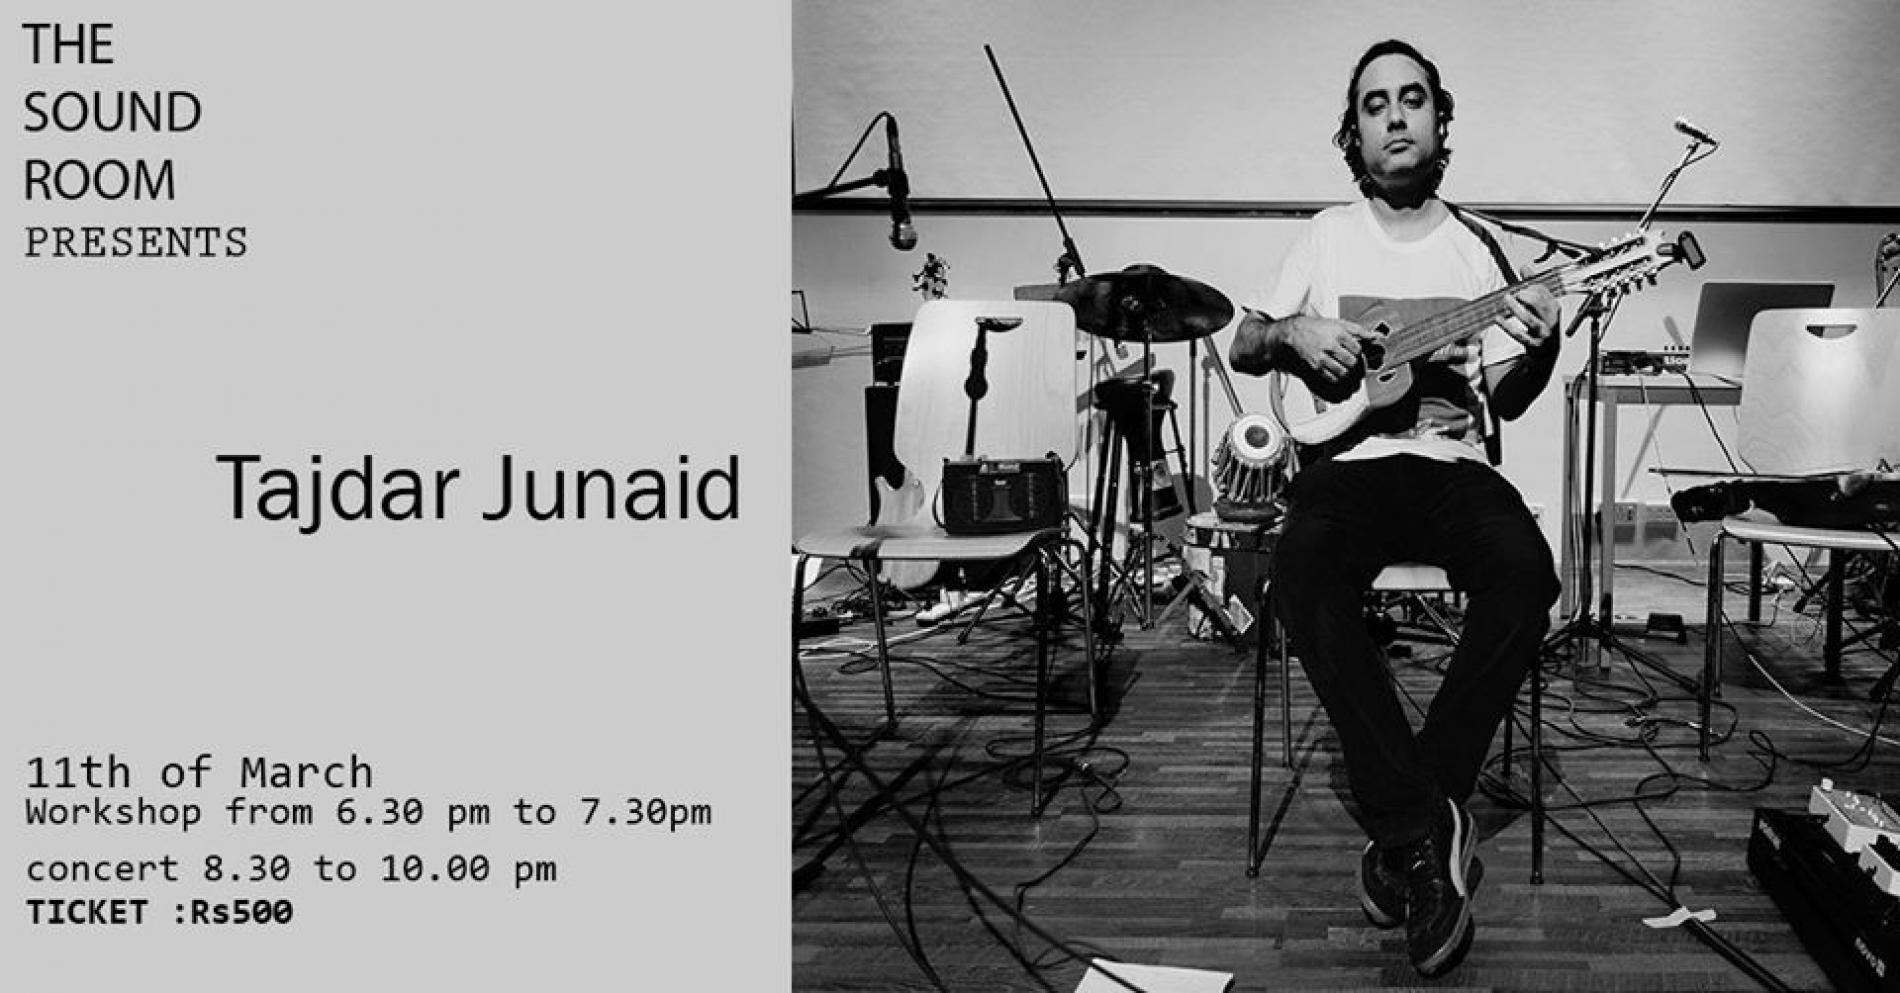 The Sound Room Presents: Tajdar Junaid